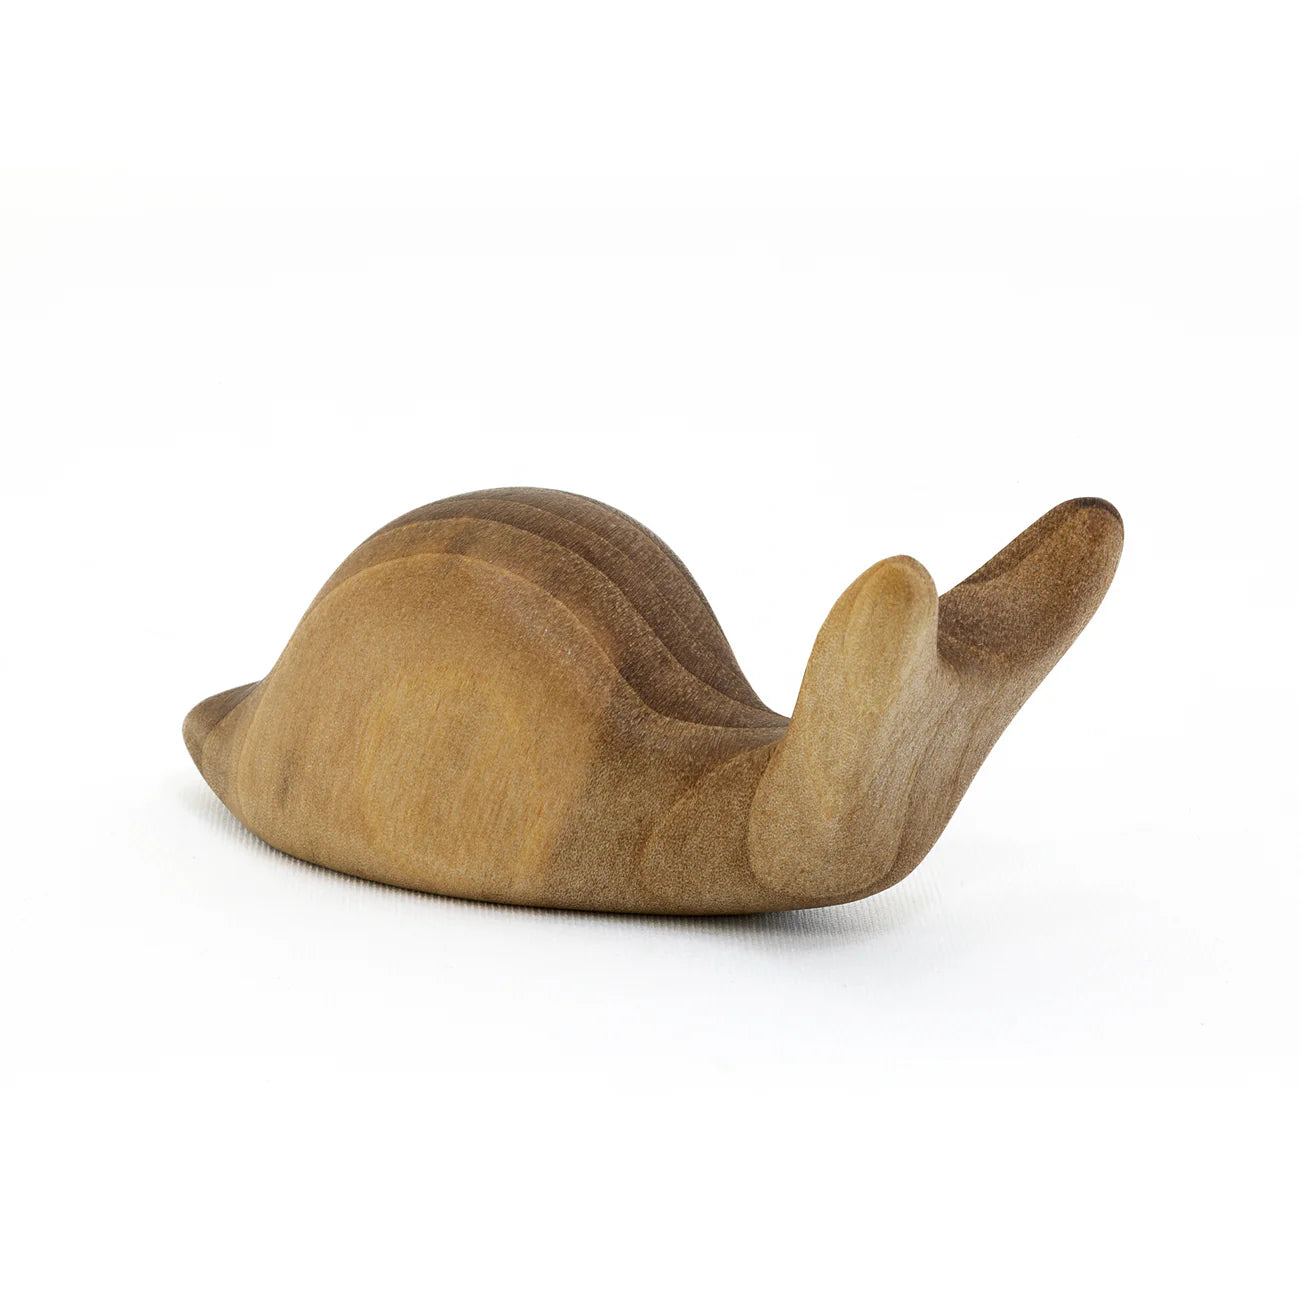 Snail : Antonio Vitali